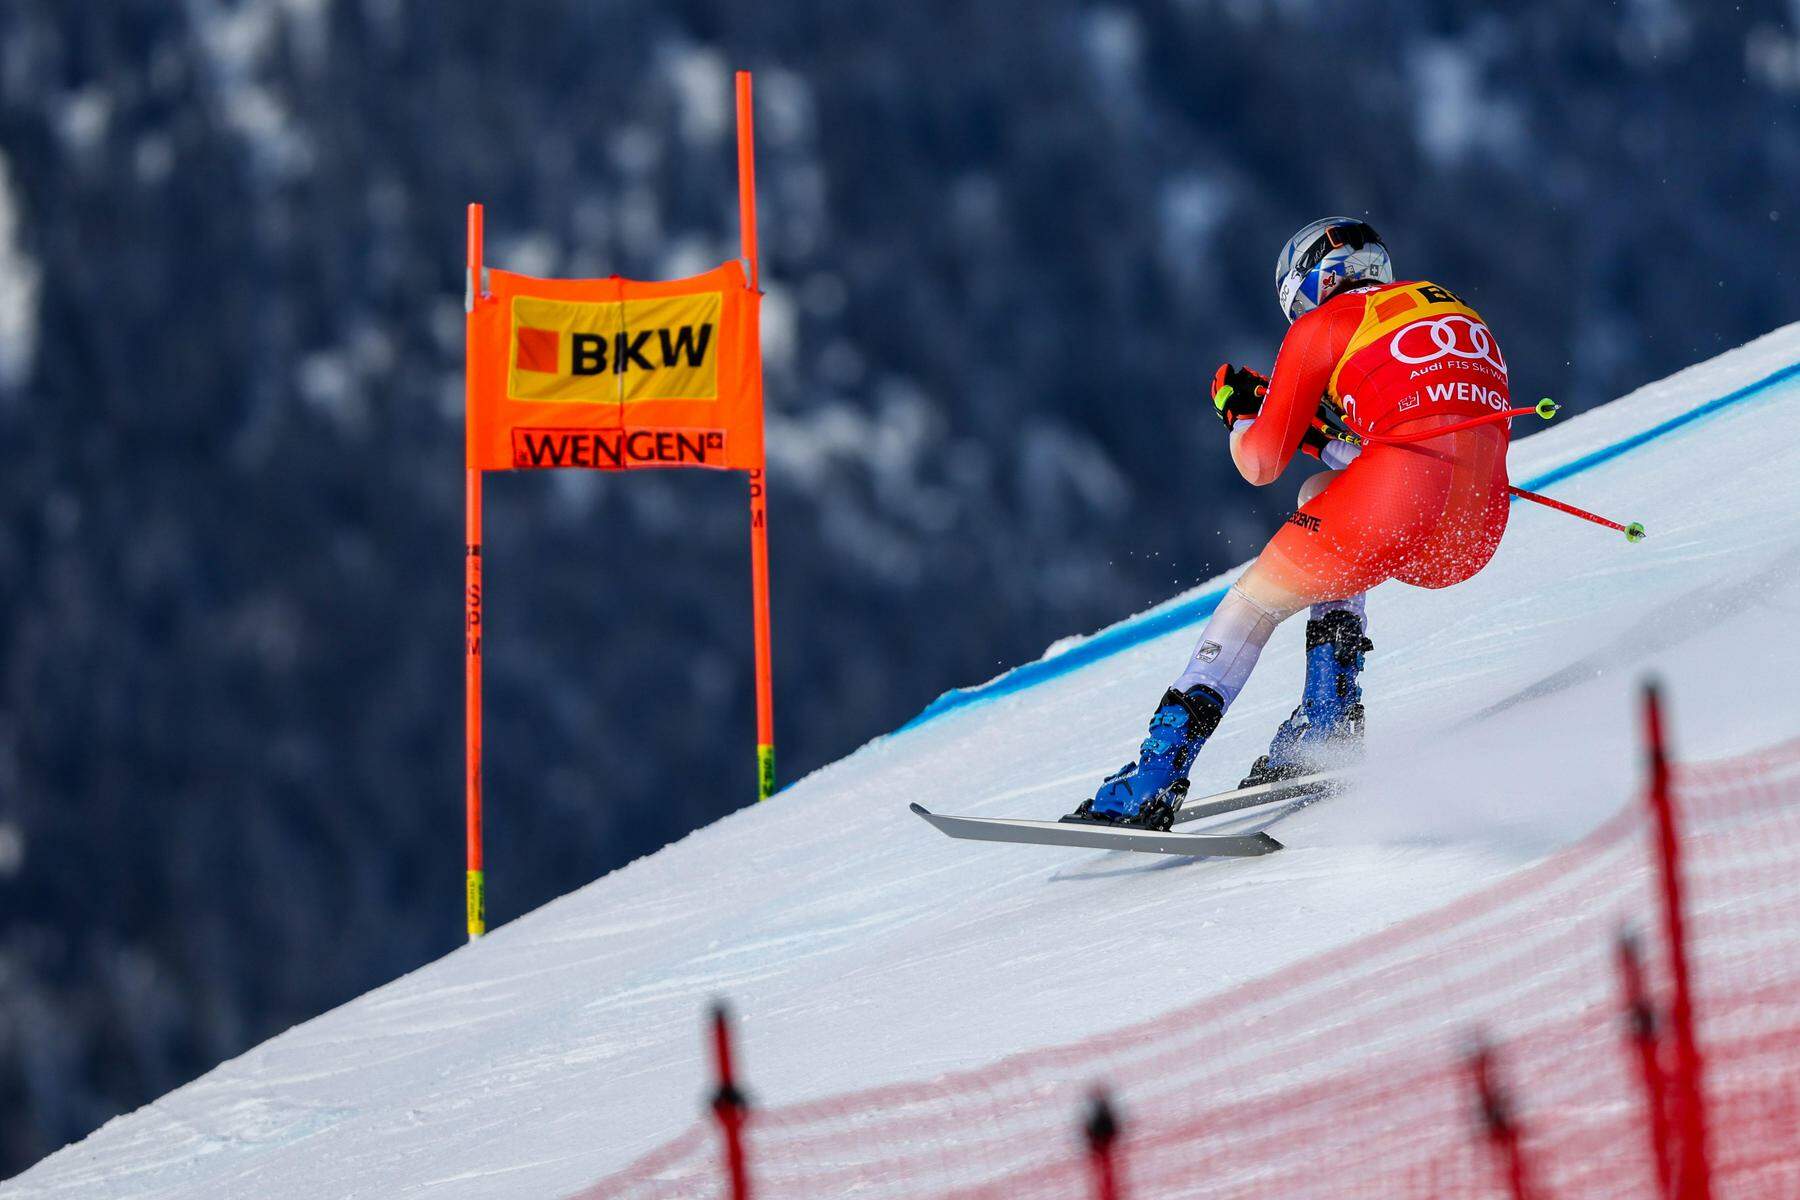 ski alpin | die 1. weltcup-abfahrt in wengen jetzt im liveticker